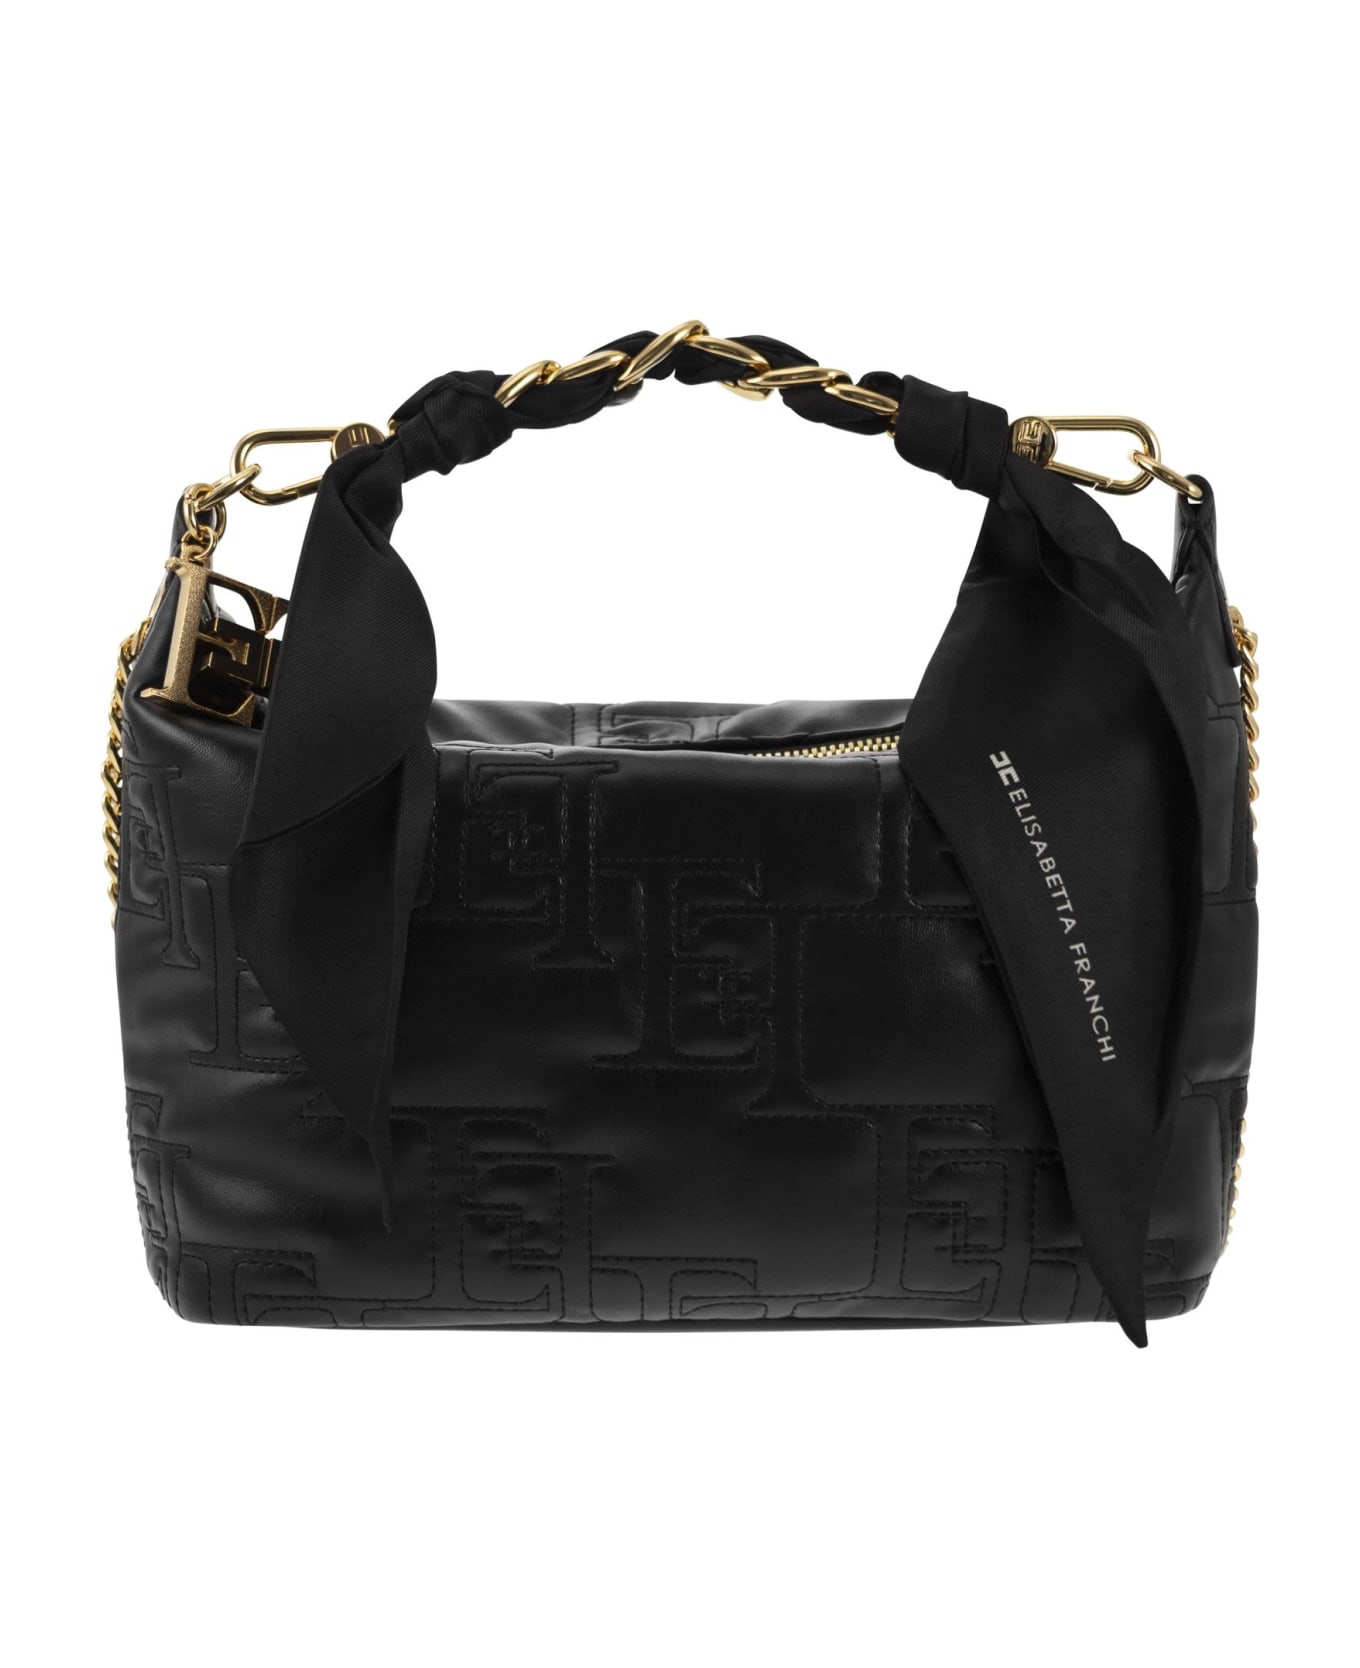 Elisabetta Franchi Black Handbag - Black トートバッグ